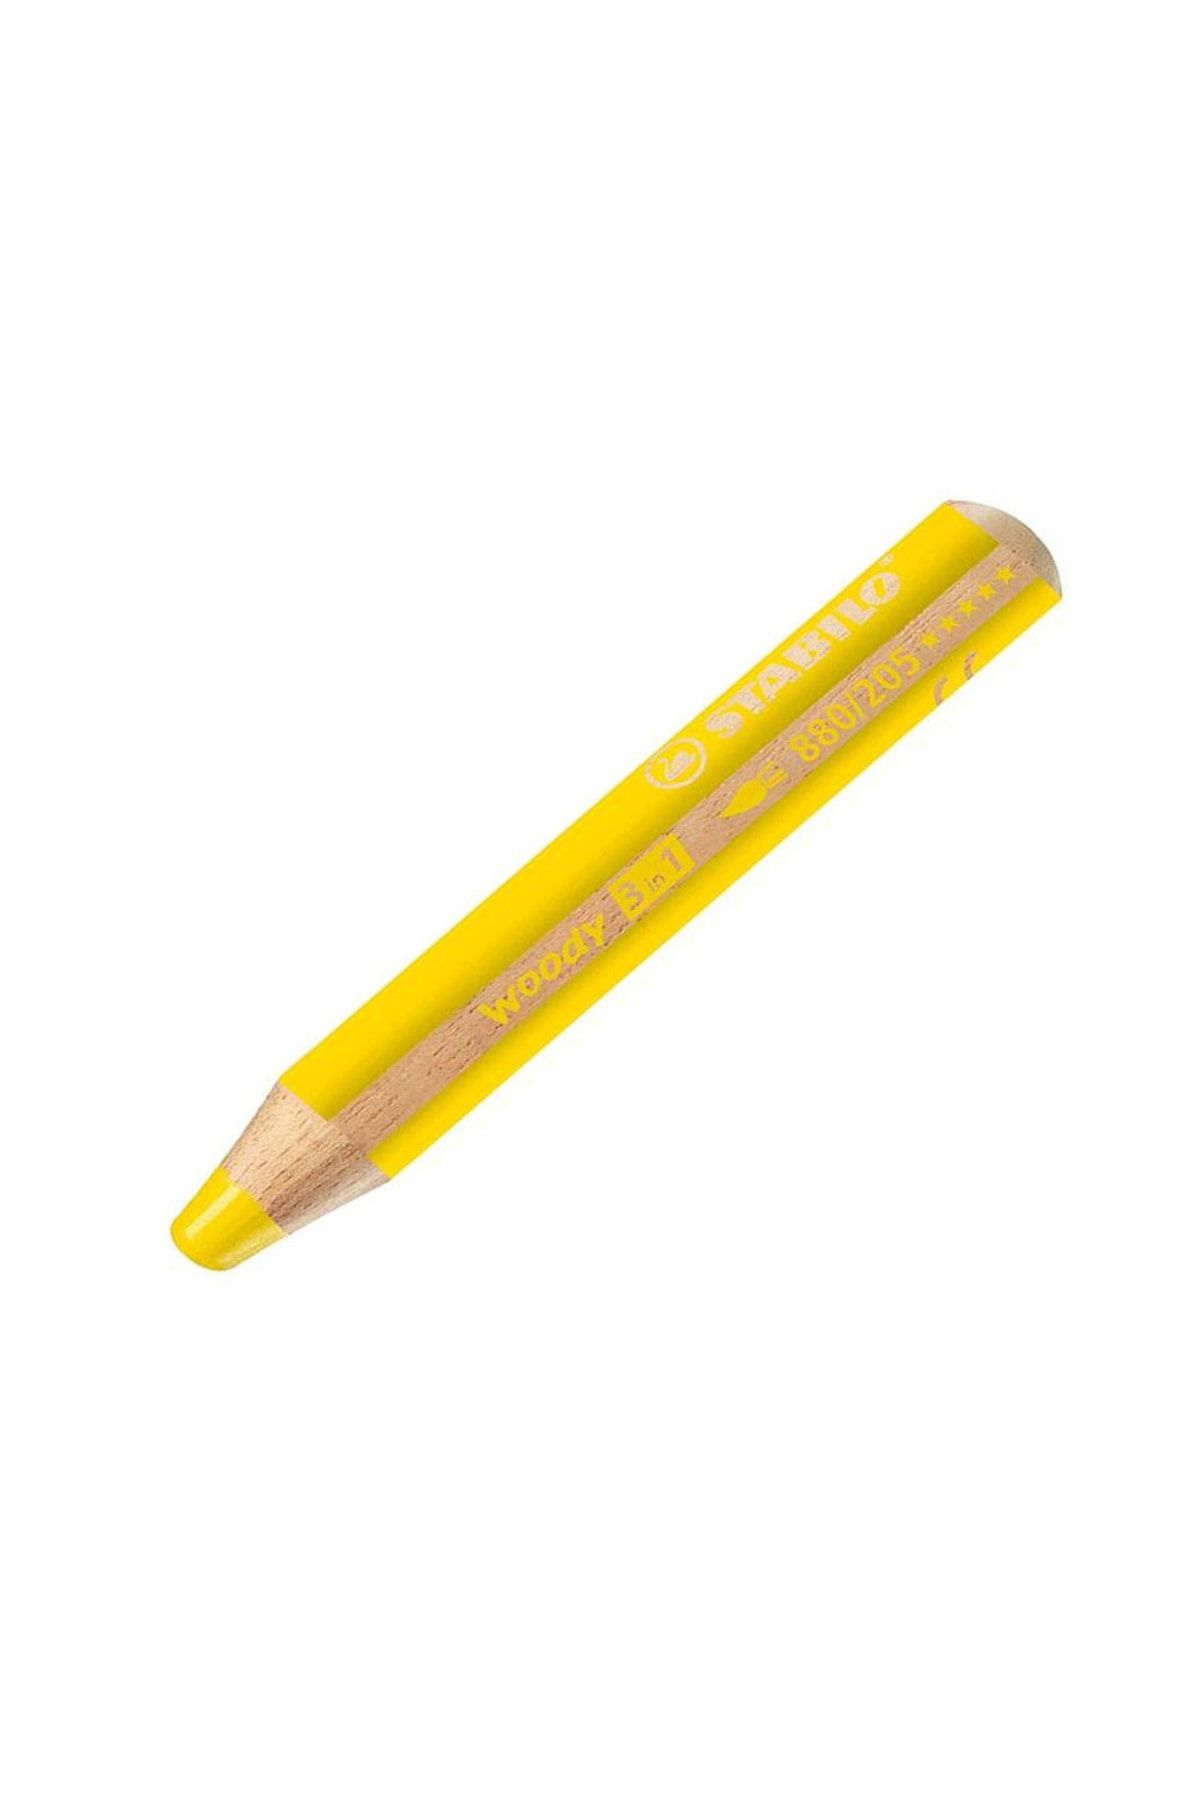 Stabilo Sarı Woody 3 İn 1 Yağlı Pastel Boya Kalemi 880-205